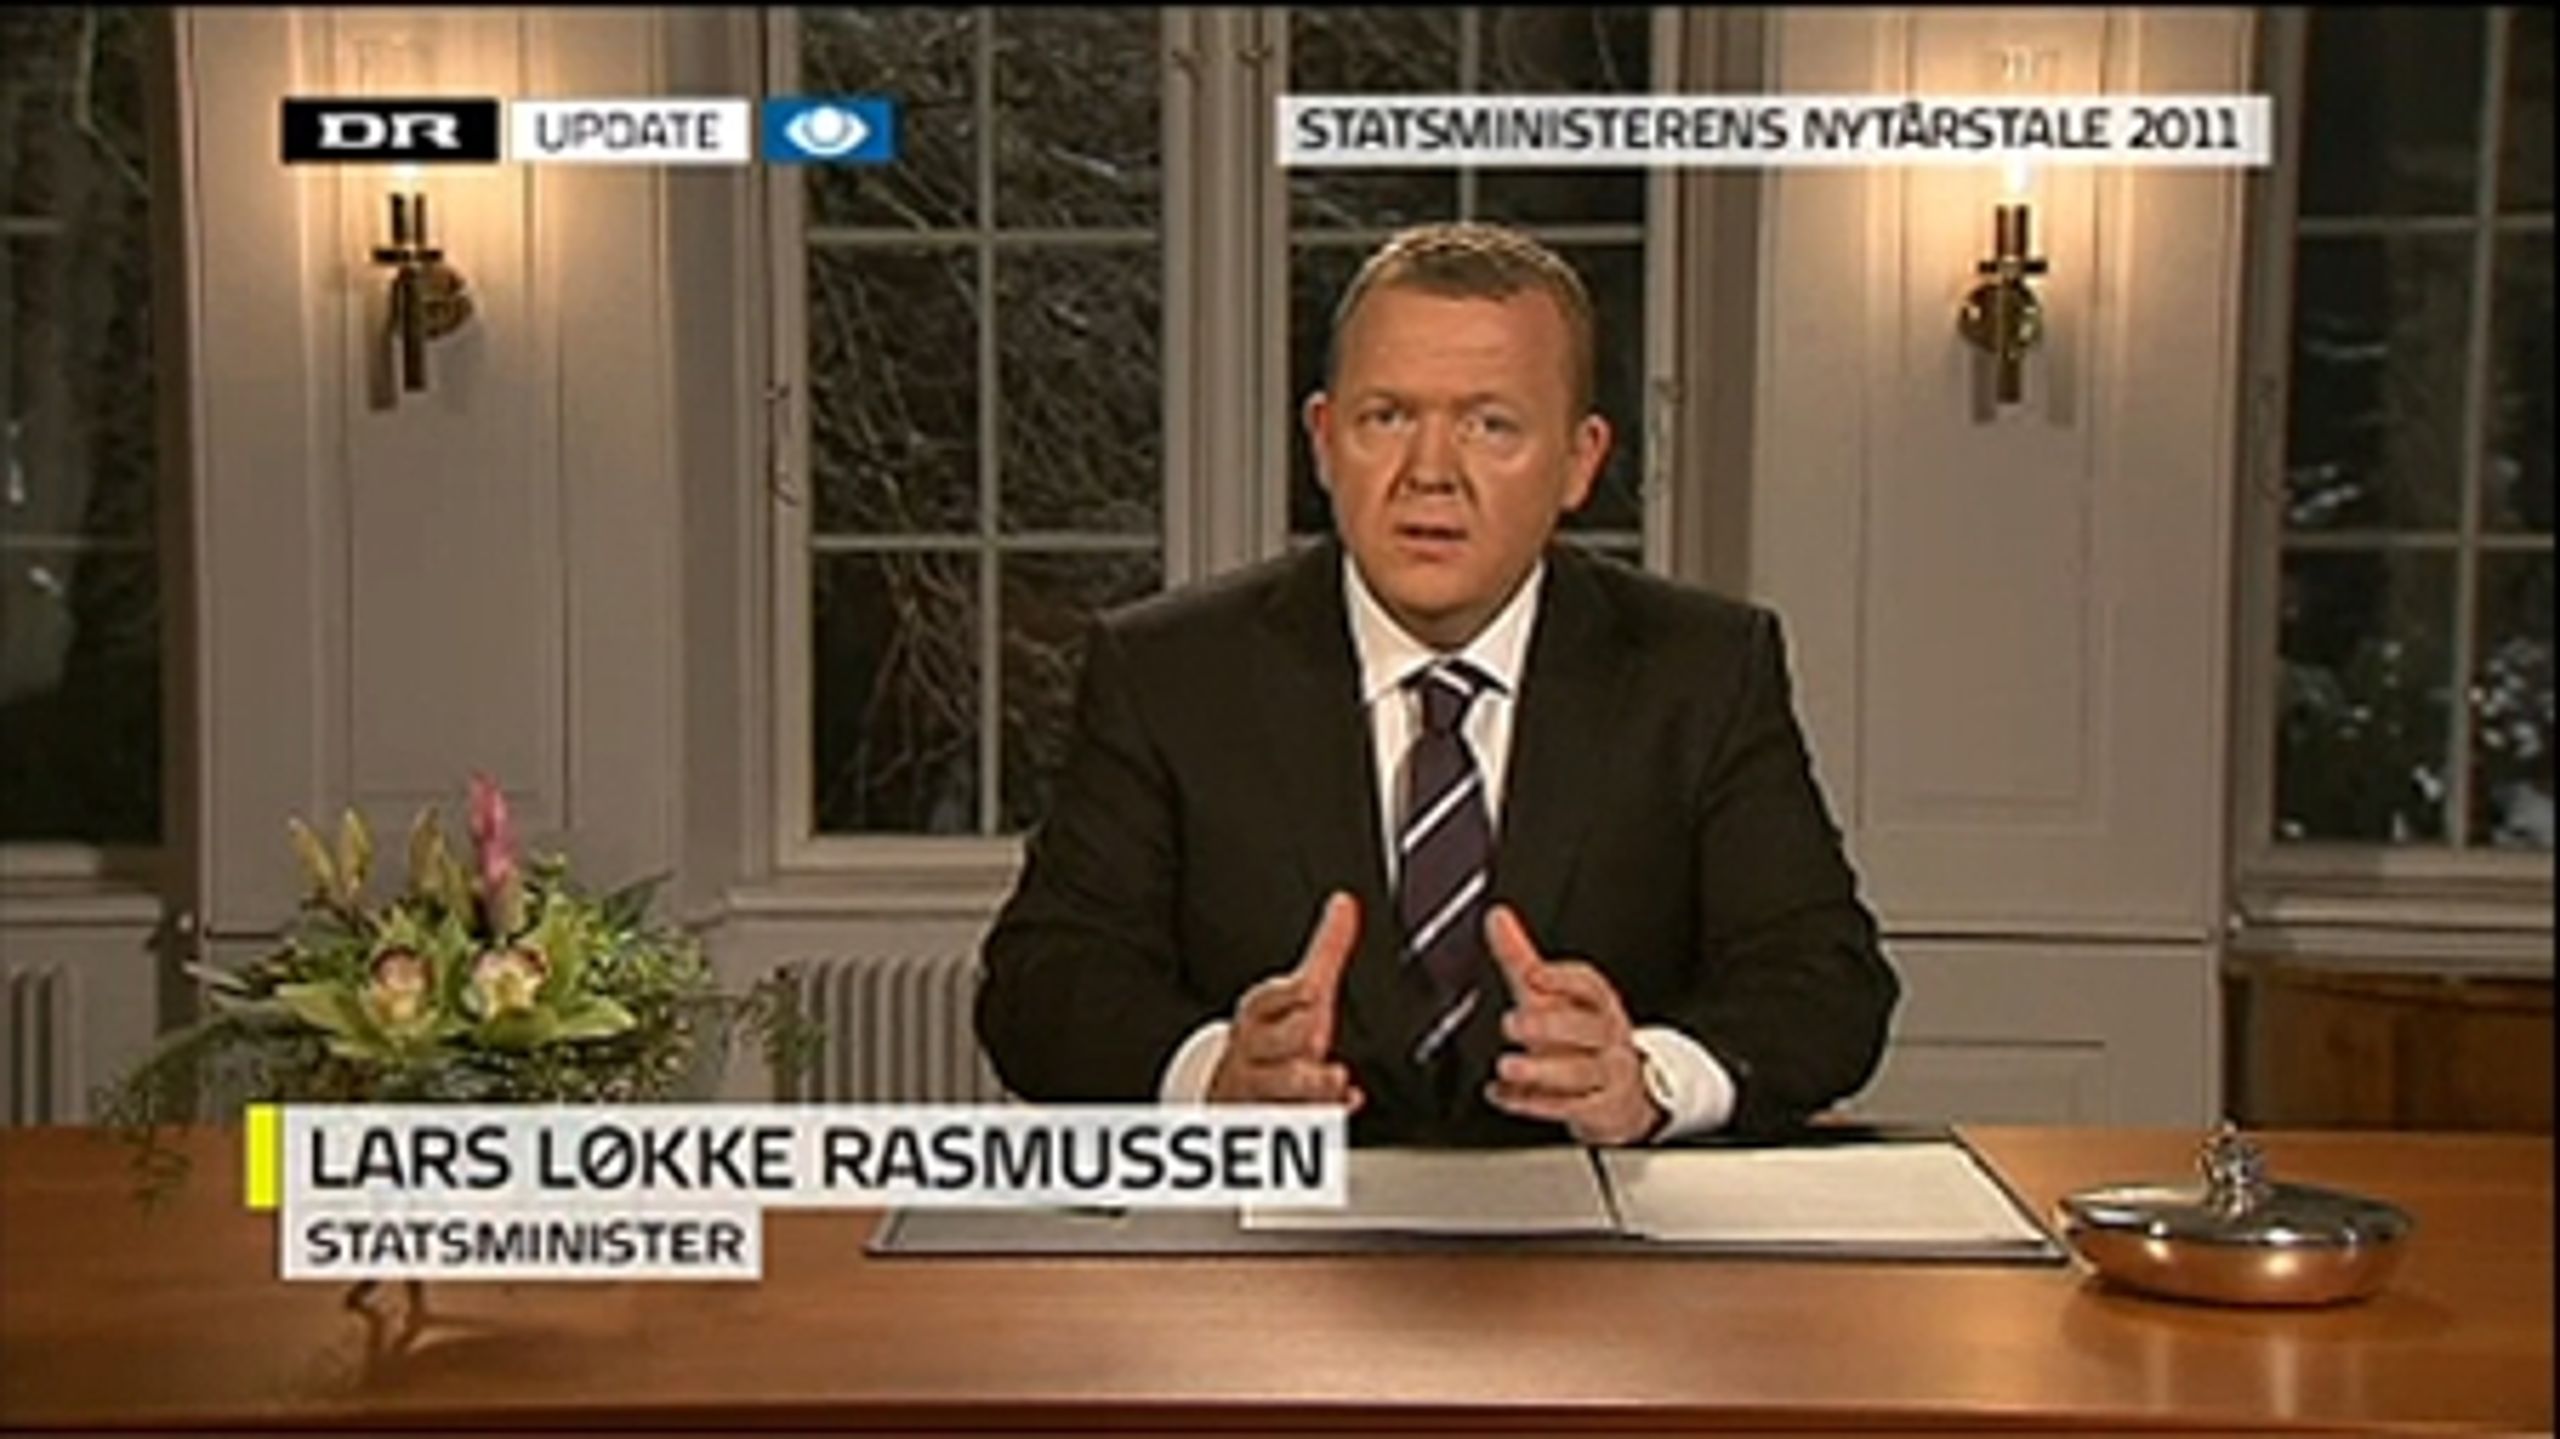 Det var i nytårstalen, statsminister Lars Løkke Rasmussen lancerede sin efterløns-offensiv. Men selvom talen i første omgang gav Venstre fremgang,  vil emnet kun i ringe grad påvirke de borgerlige vælgeres stemmeafgivning. 